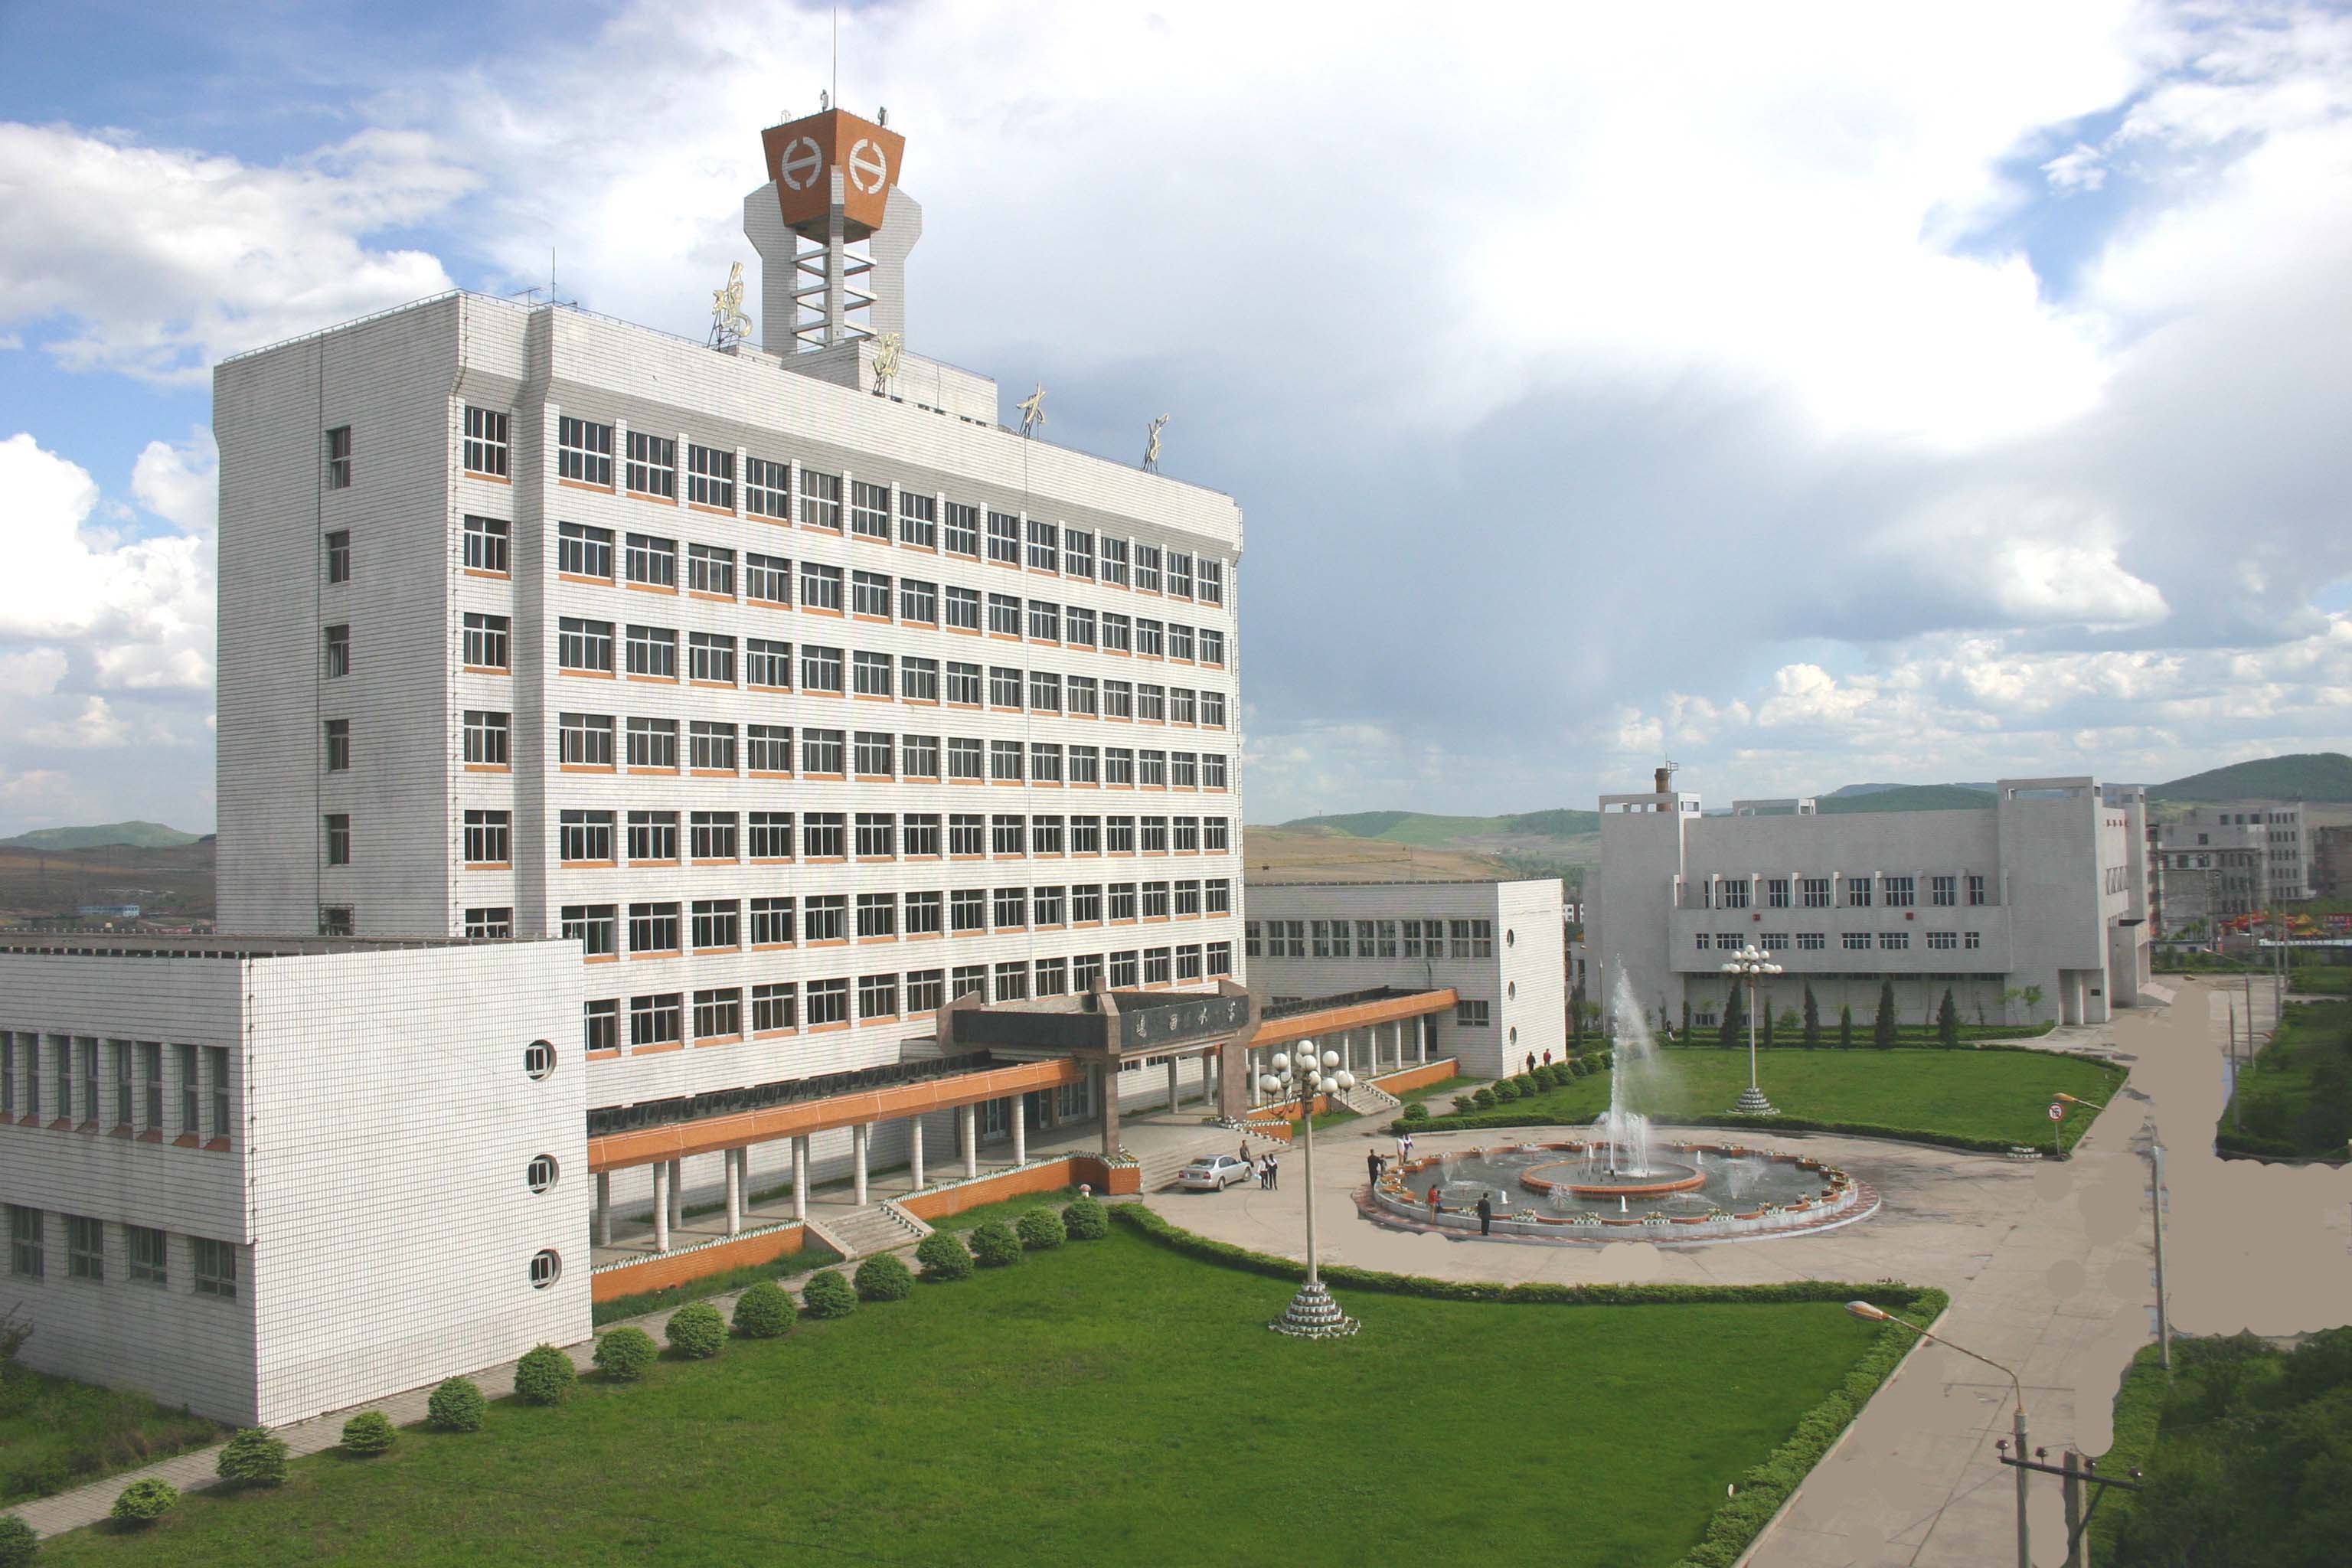 黑龙江工业学院